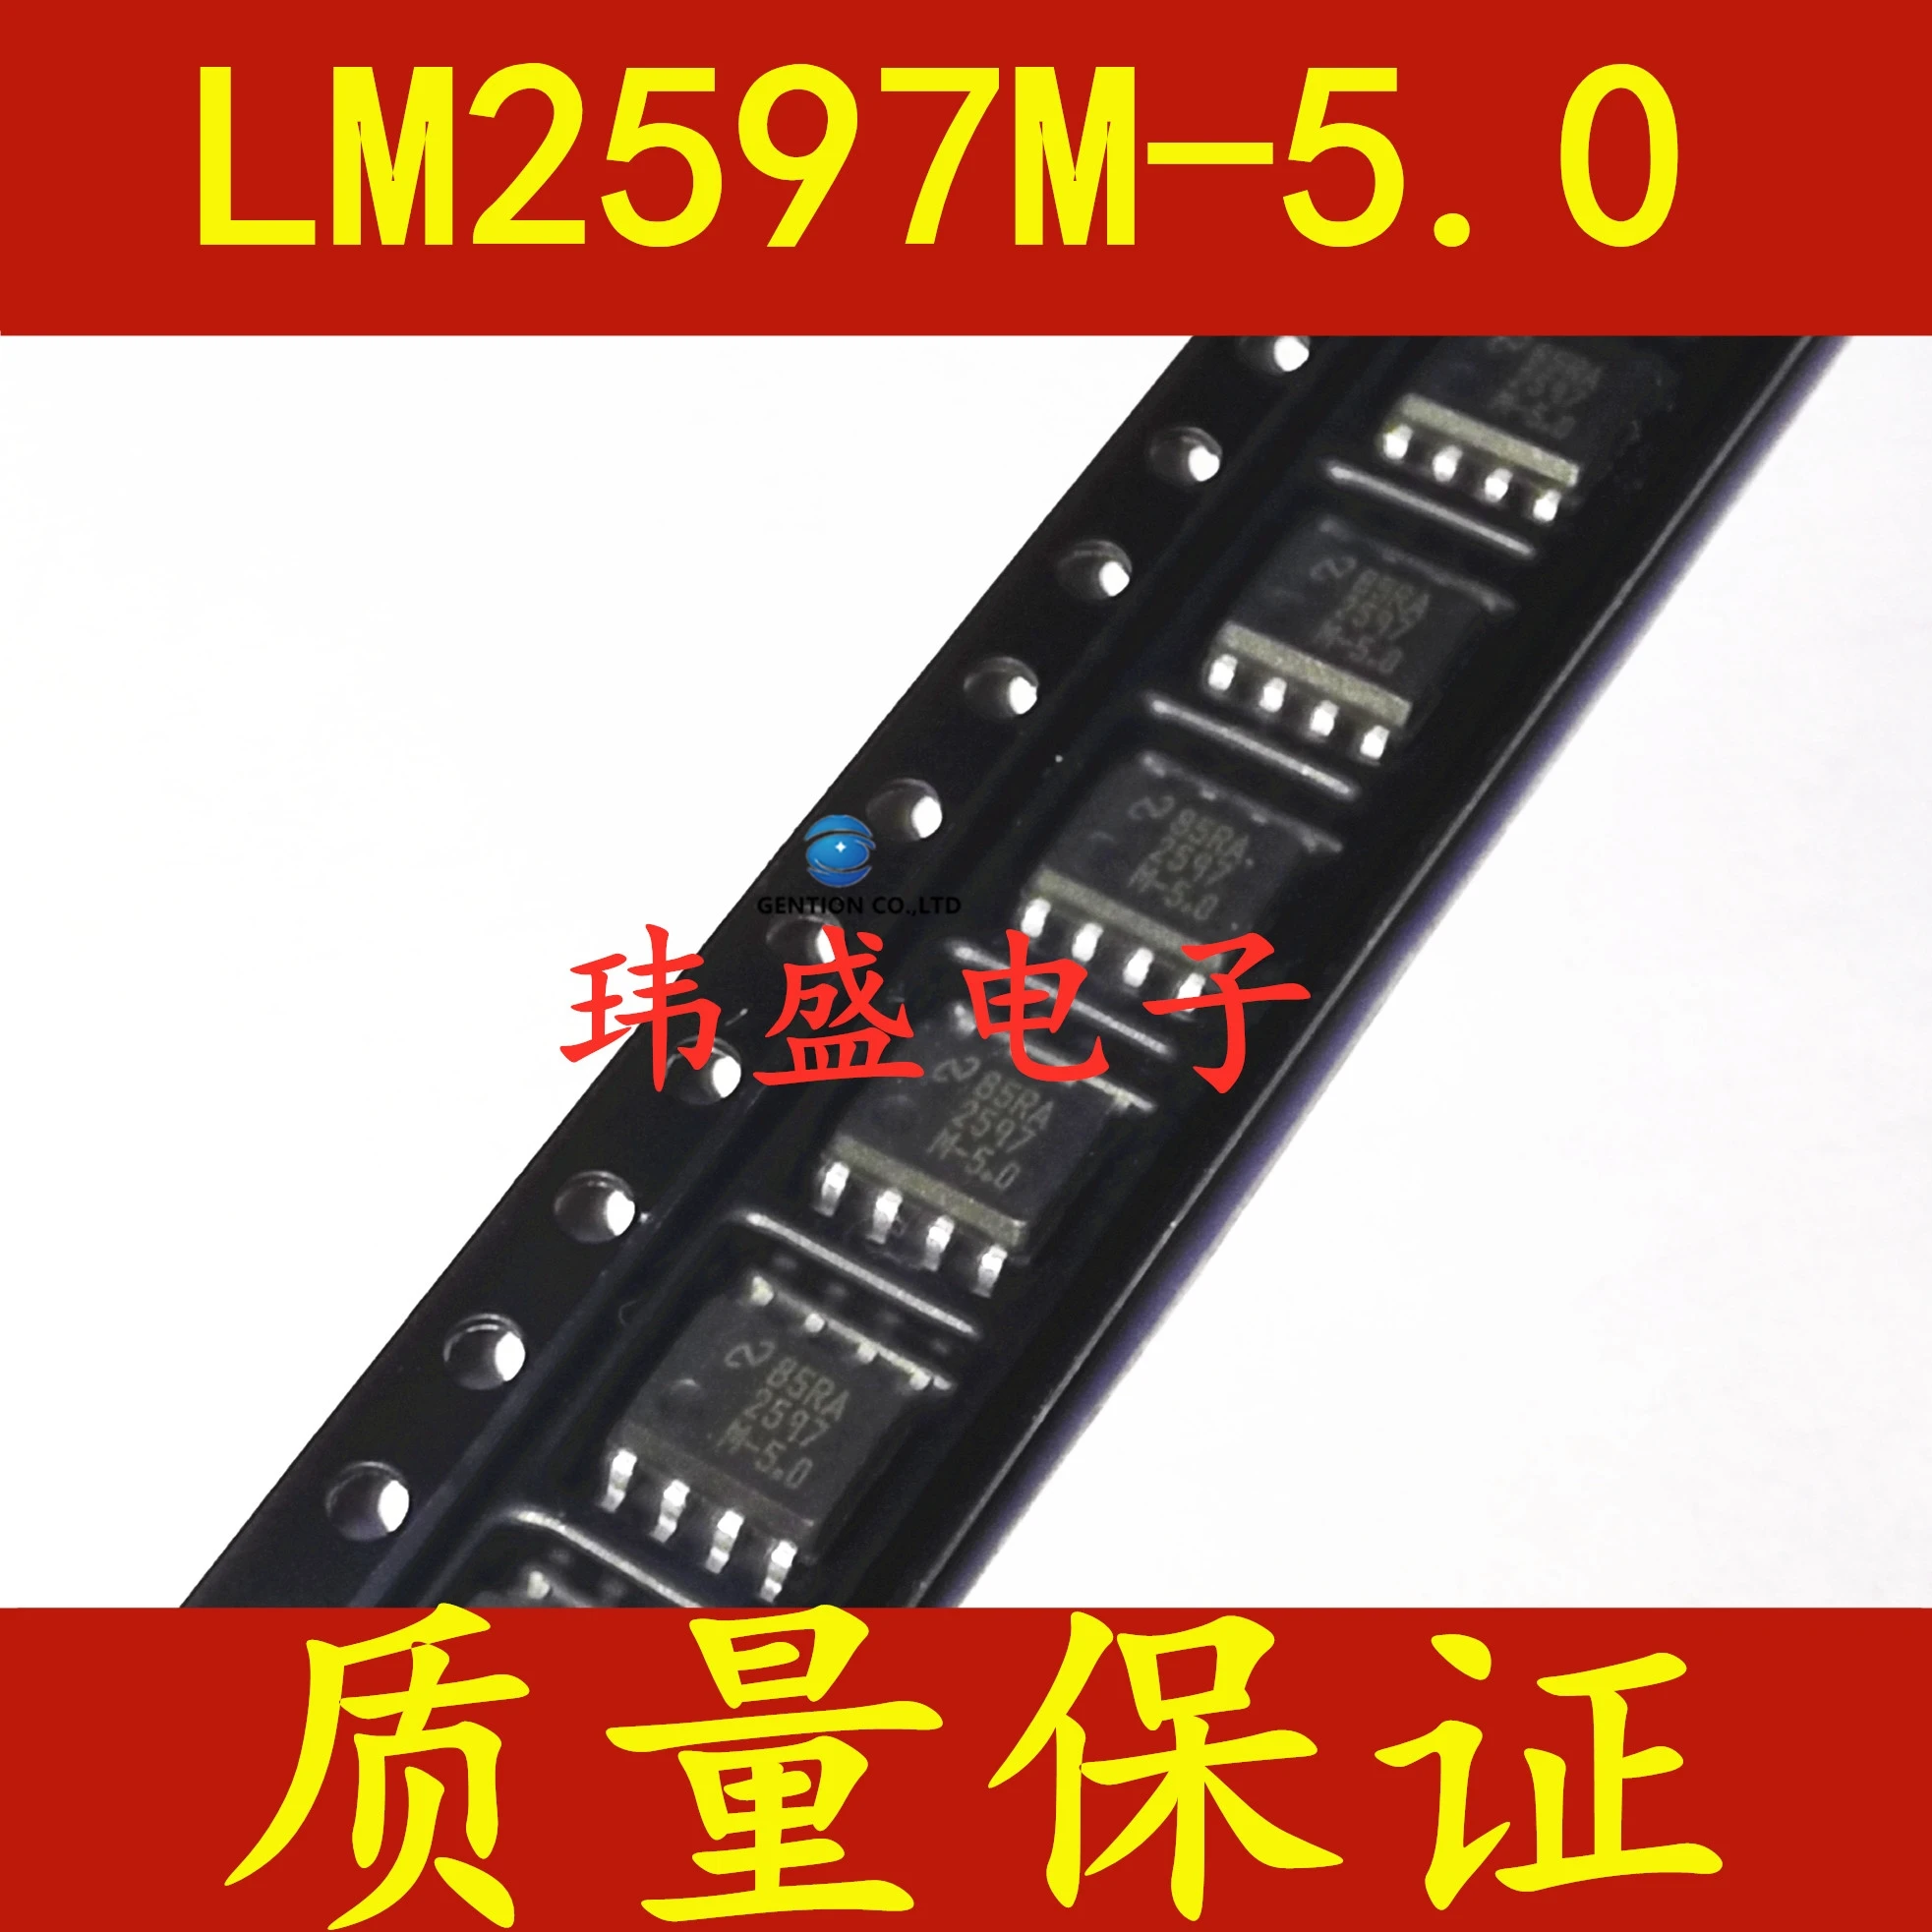 

5 шт. LM2597M-5.0 Переключатель Регулятор напряжения чип 2597 m5. 0 патч SOP8, точечный запас, 100% новый и оригинальный